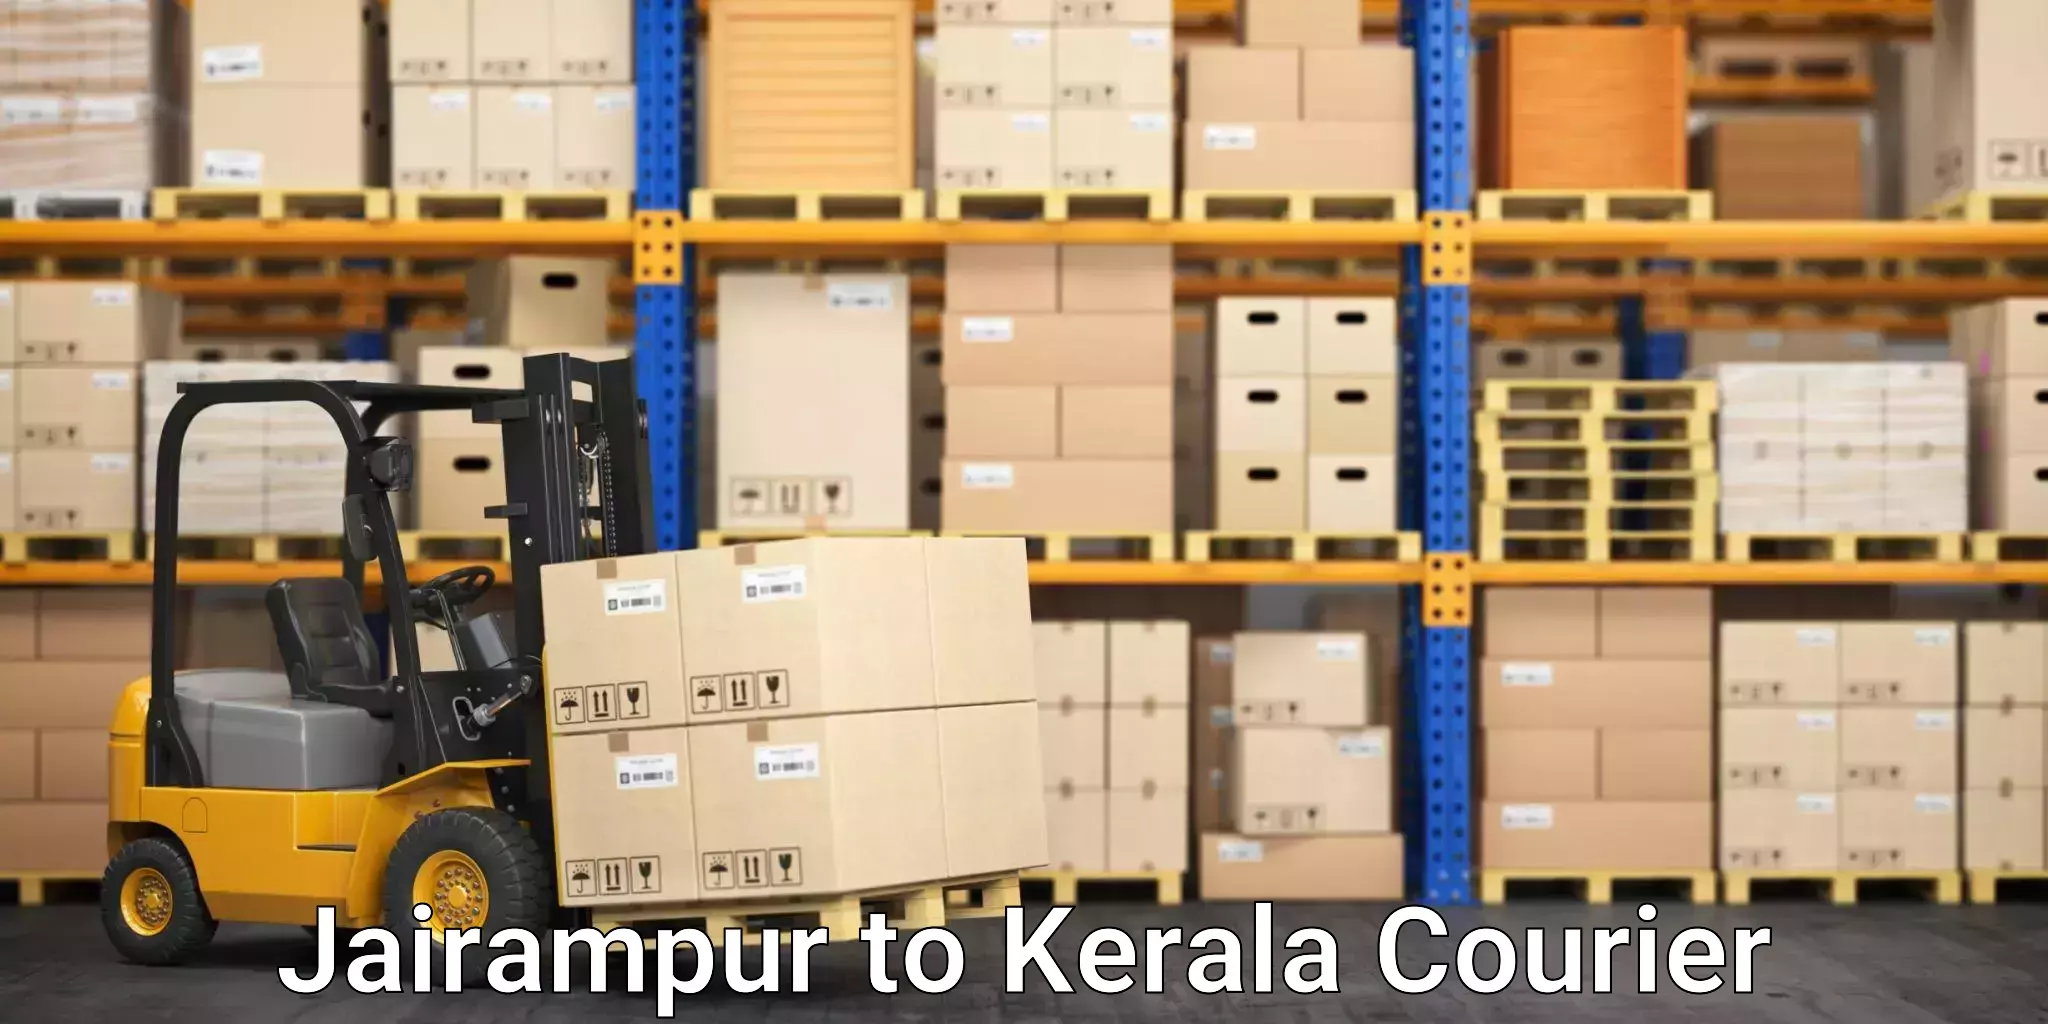 Premium courier solutions Jairampur to Mahatma Gandhi University Kottayam